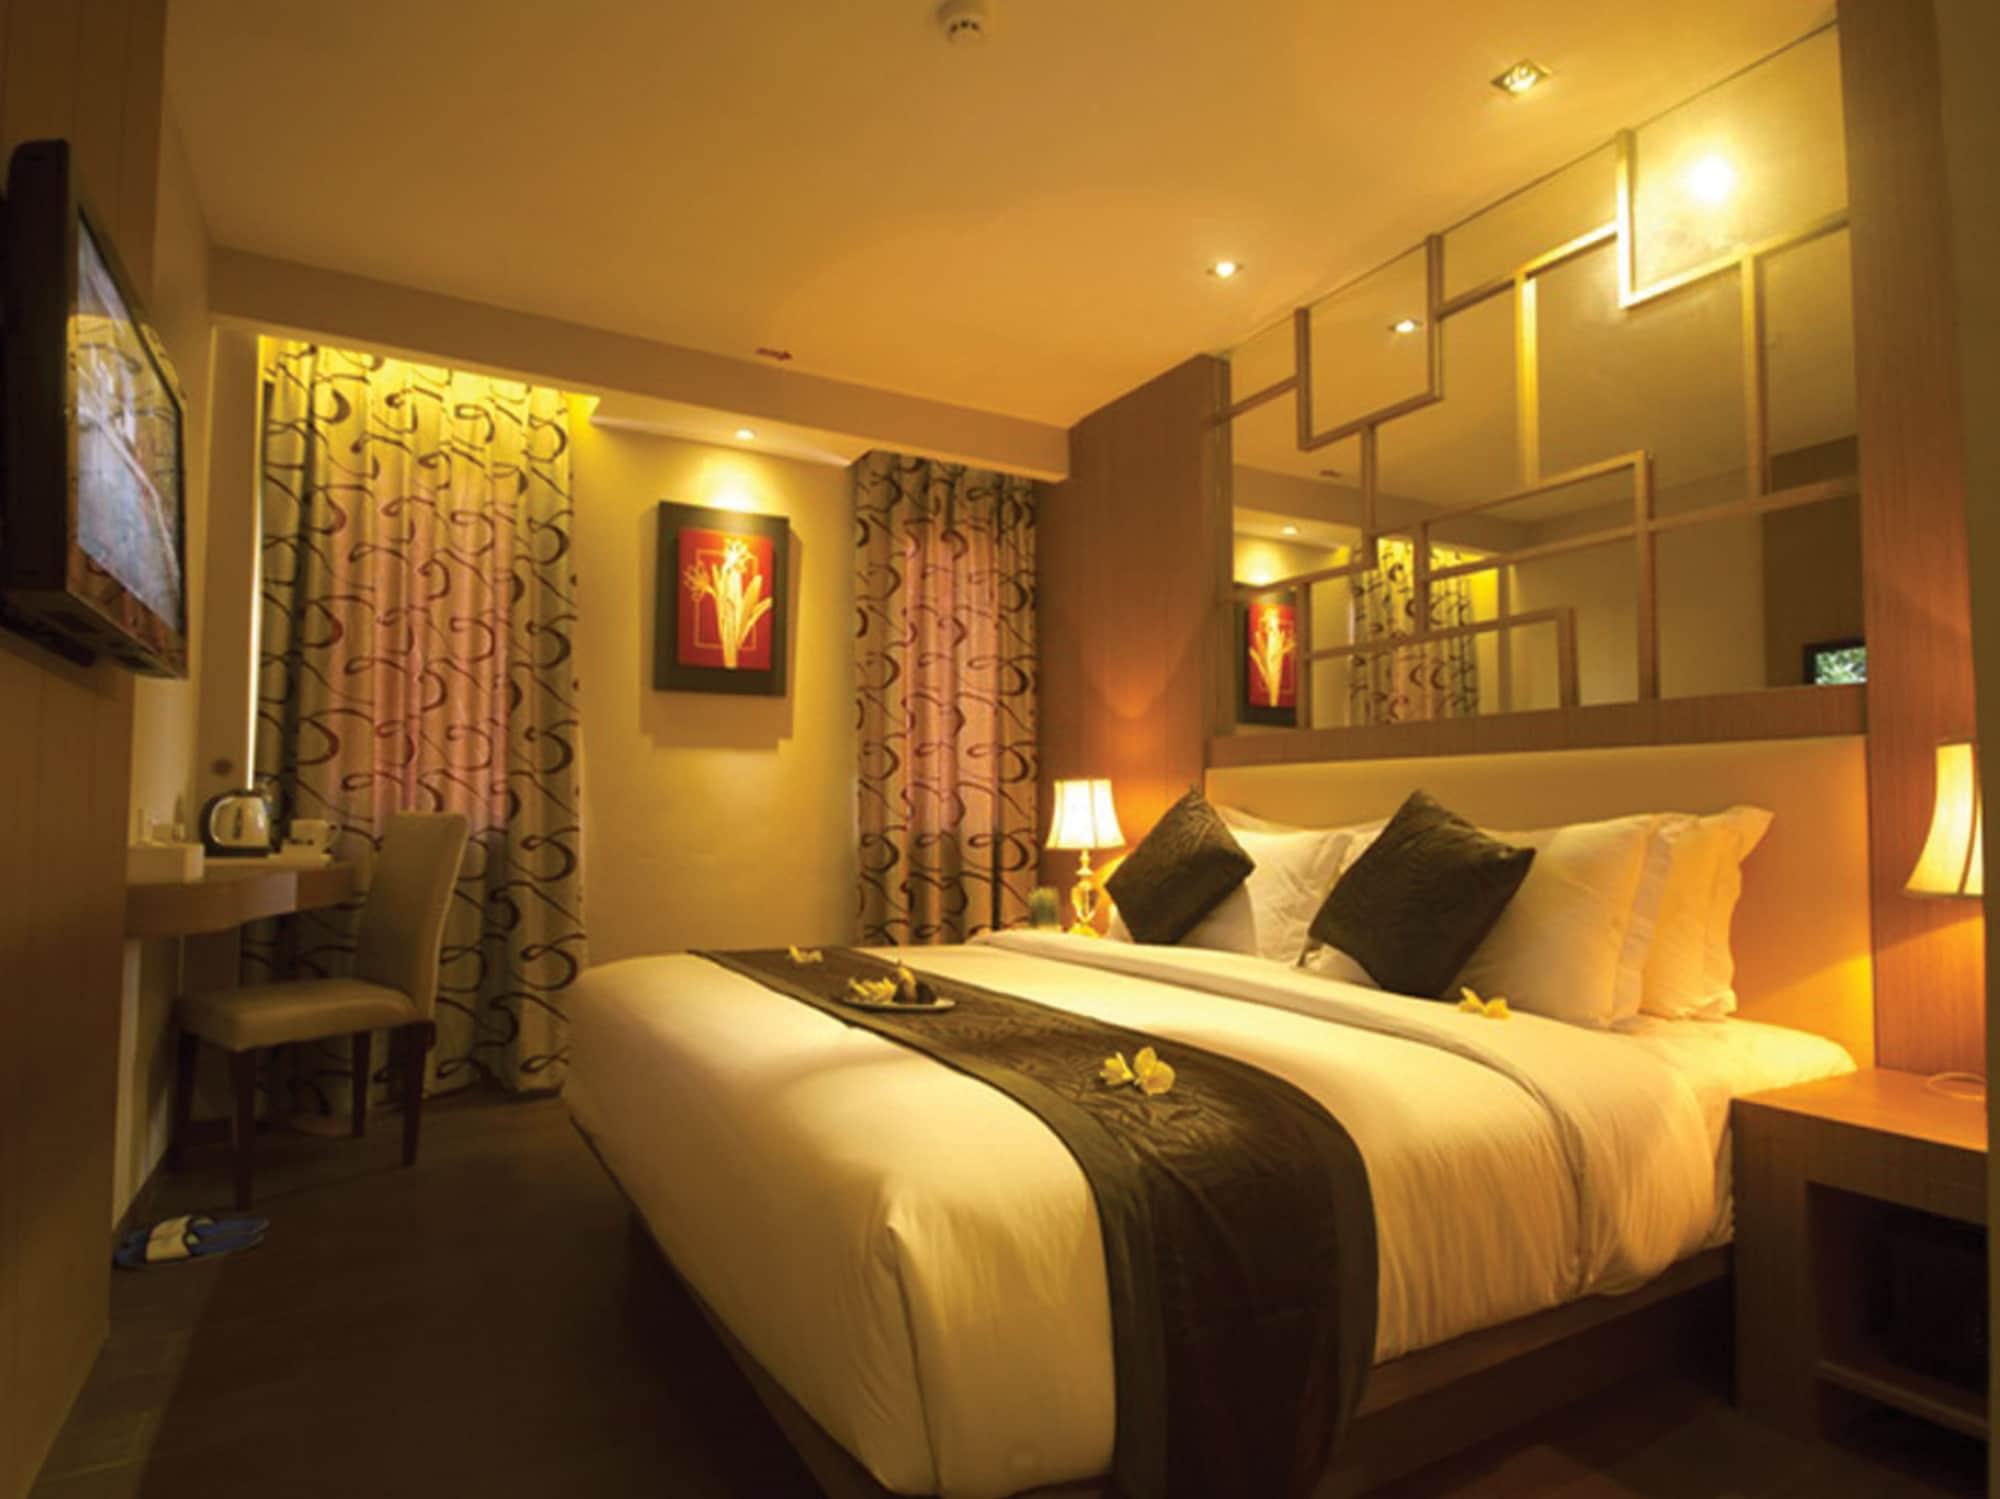 Serela Kuta By Kagum Hotels Luaran gambar